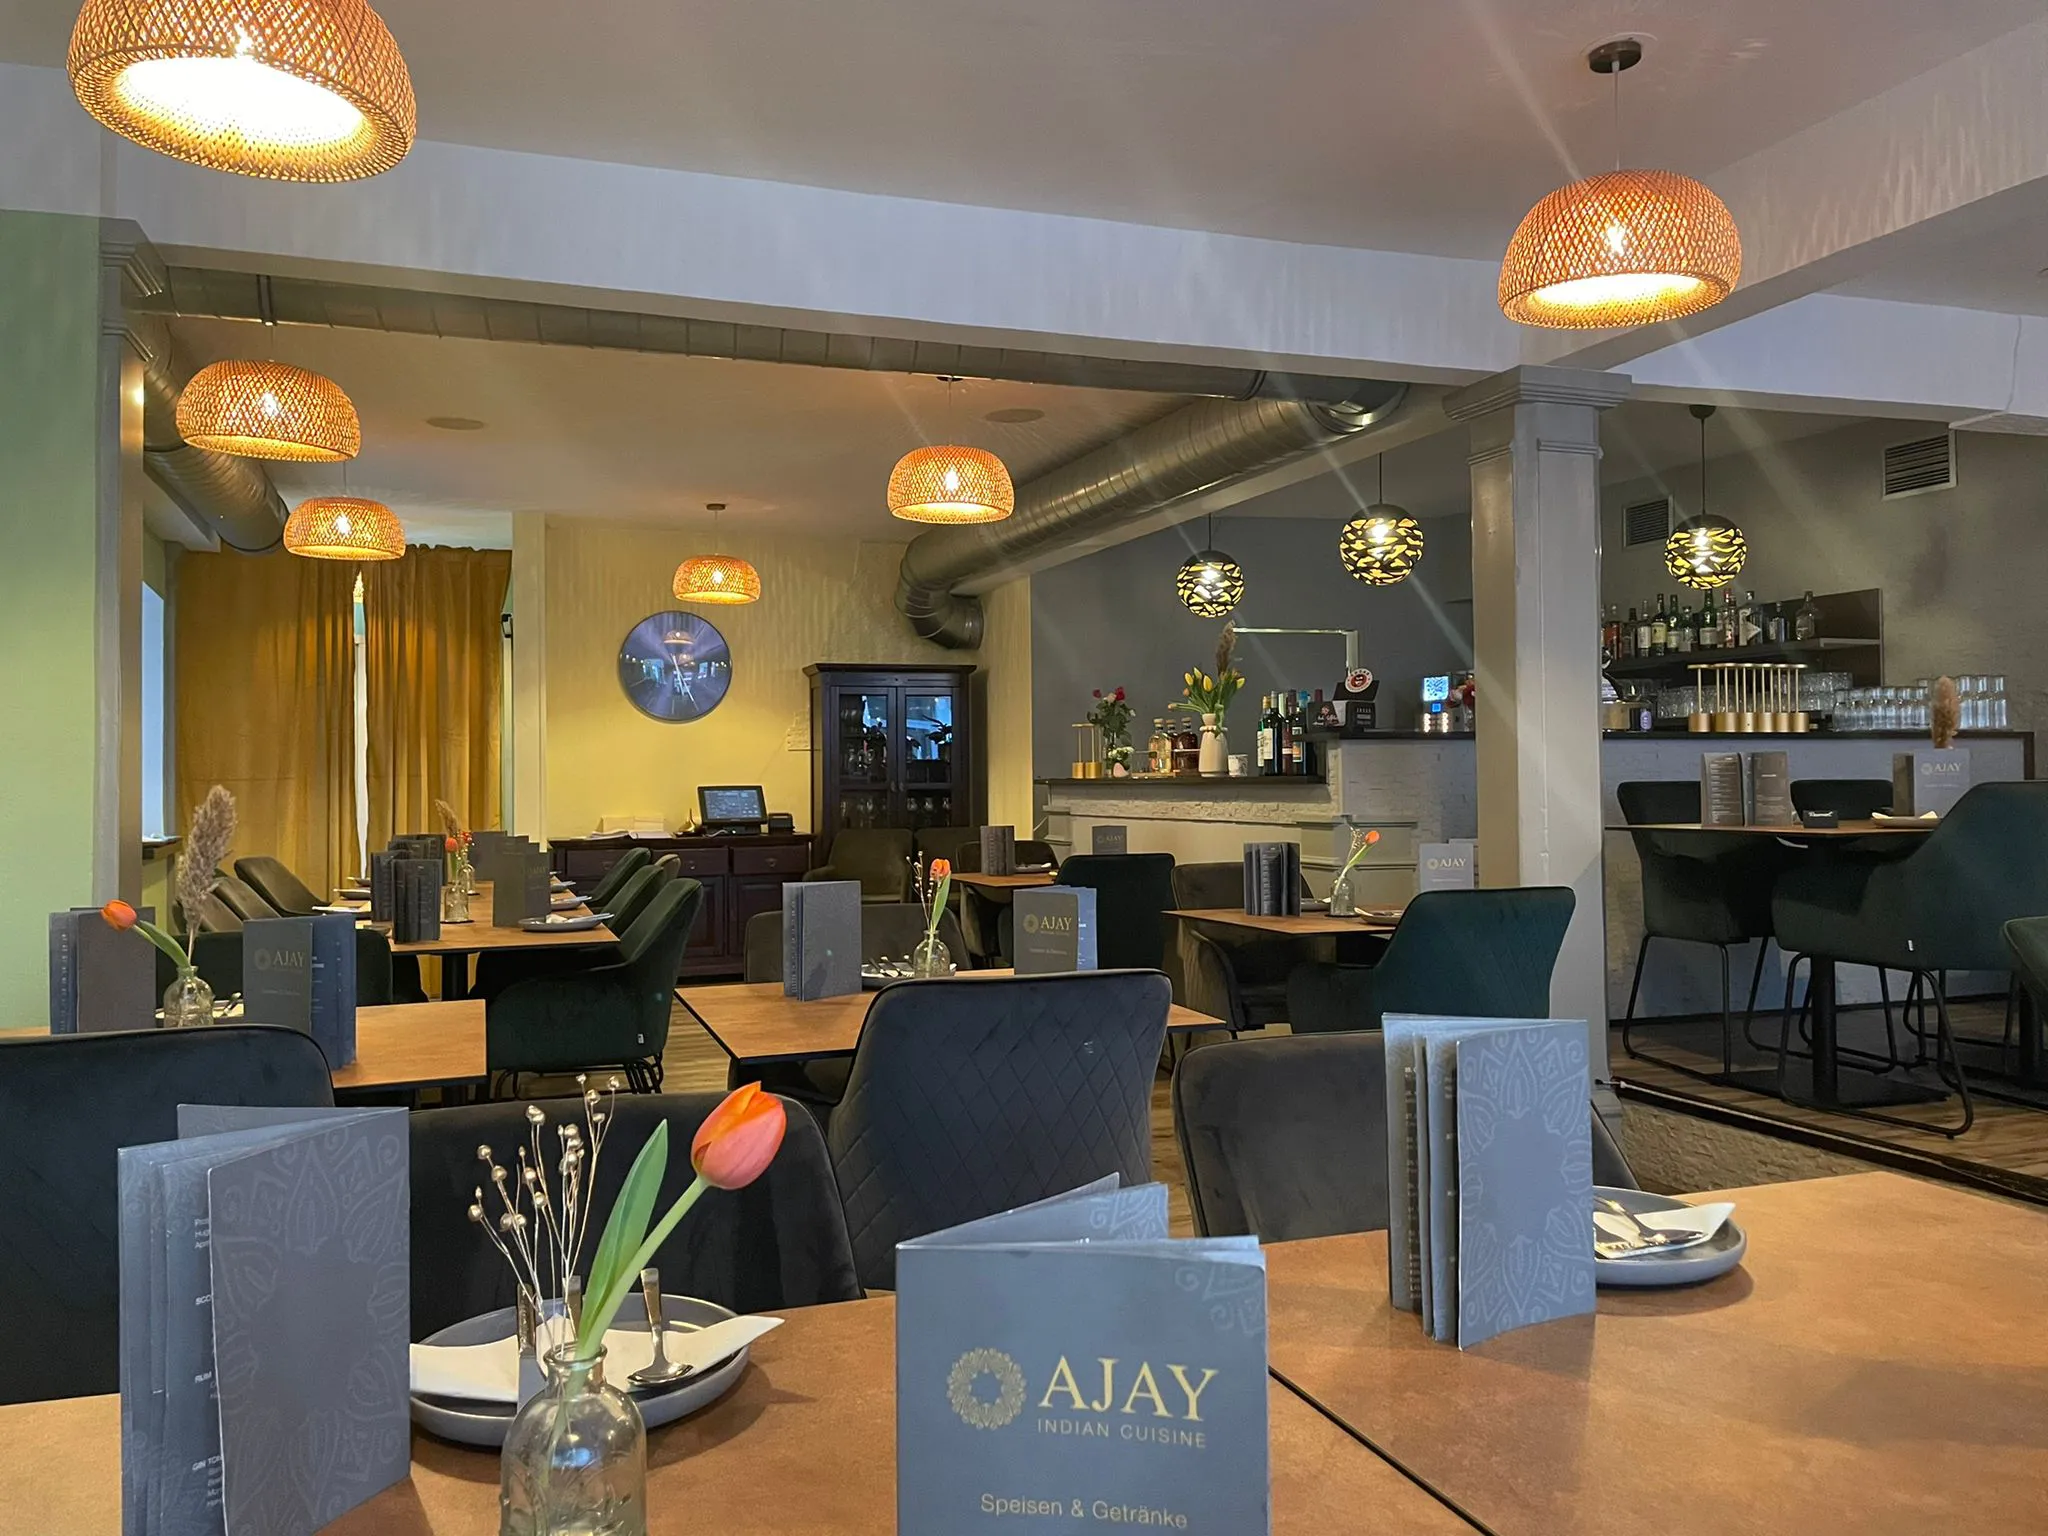 Innenansicht eines gemütlichen Restaurants mit modernen hängenden Lampen, elegant gedeckten Tischen und einer Bar im Hintergrund